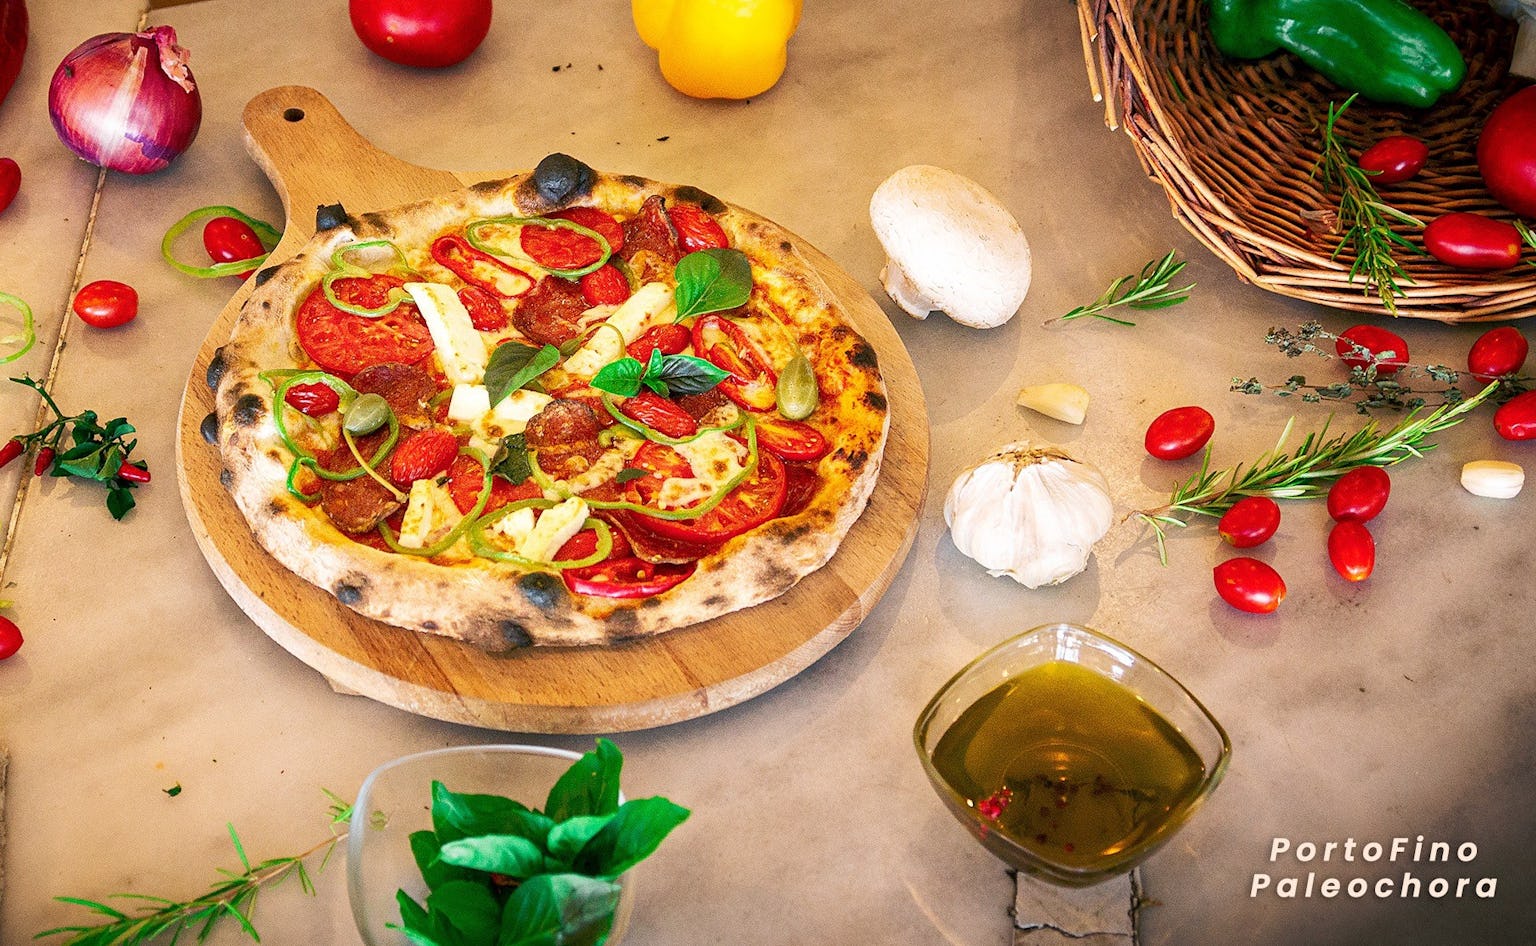 Portofino: Authentic Italian Pizza and Al Dente Pasta